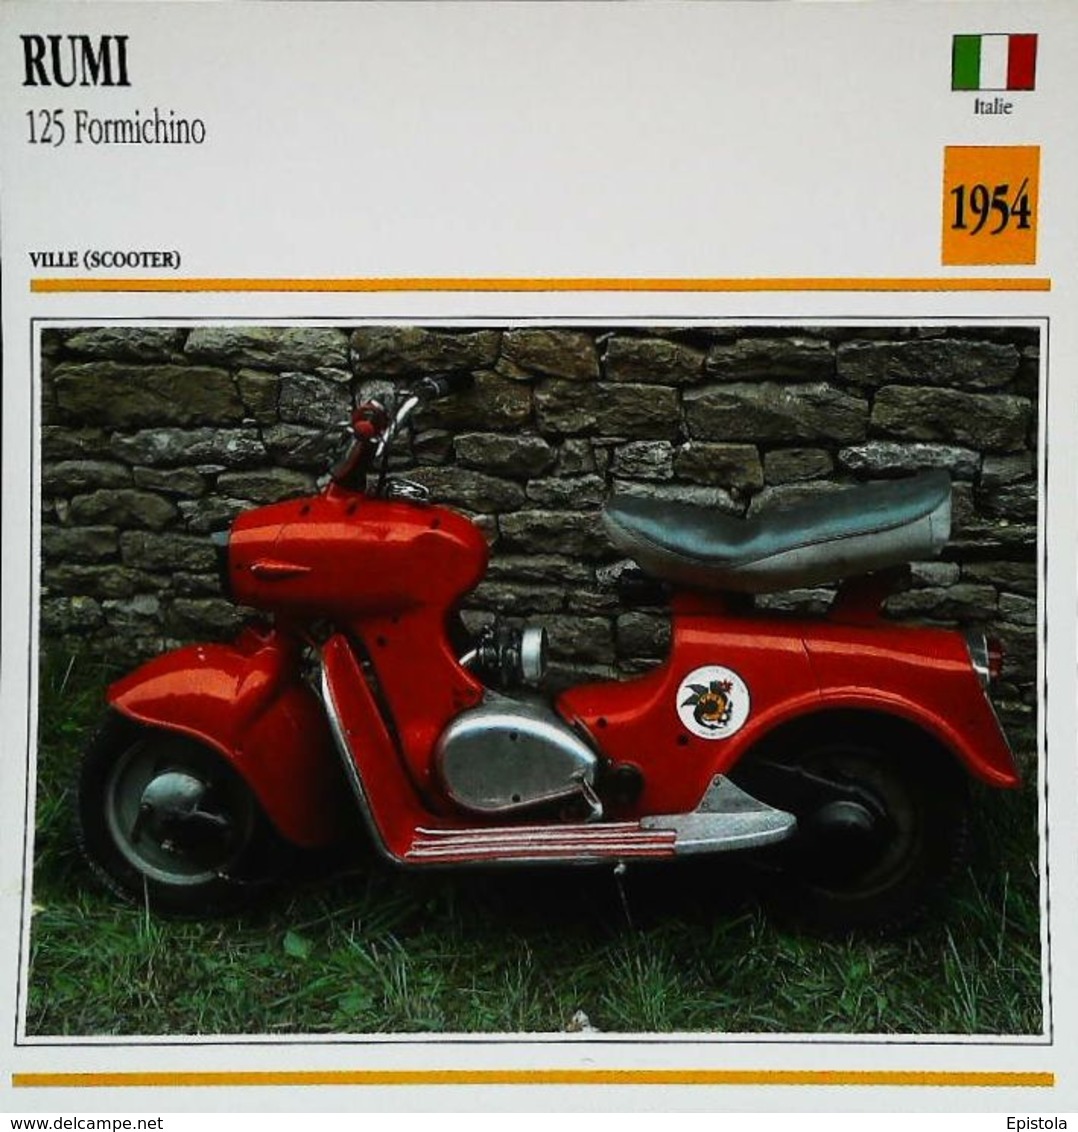 RUMI 125cc  Scooter Formichino 1954 - Moto Italienne - Collection Fiche Technique Edito-Service S.A. - Collections